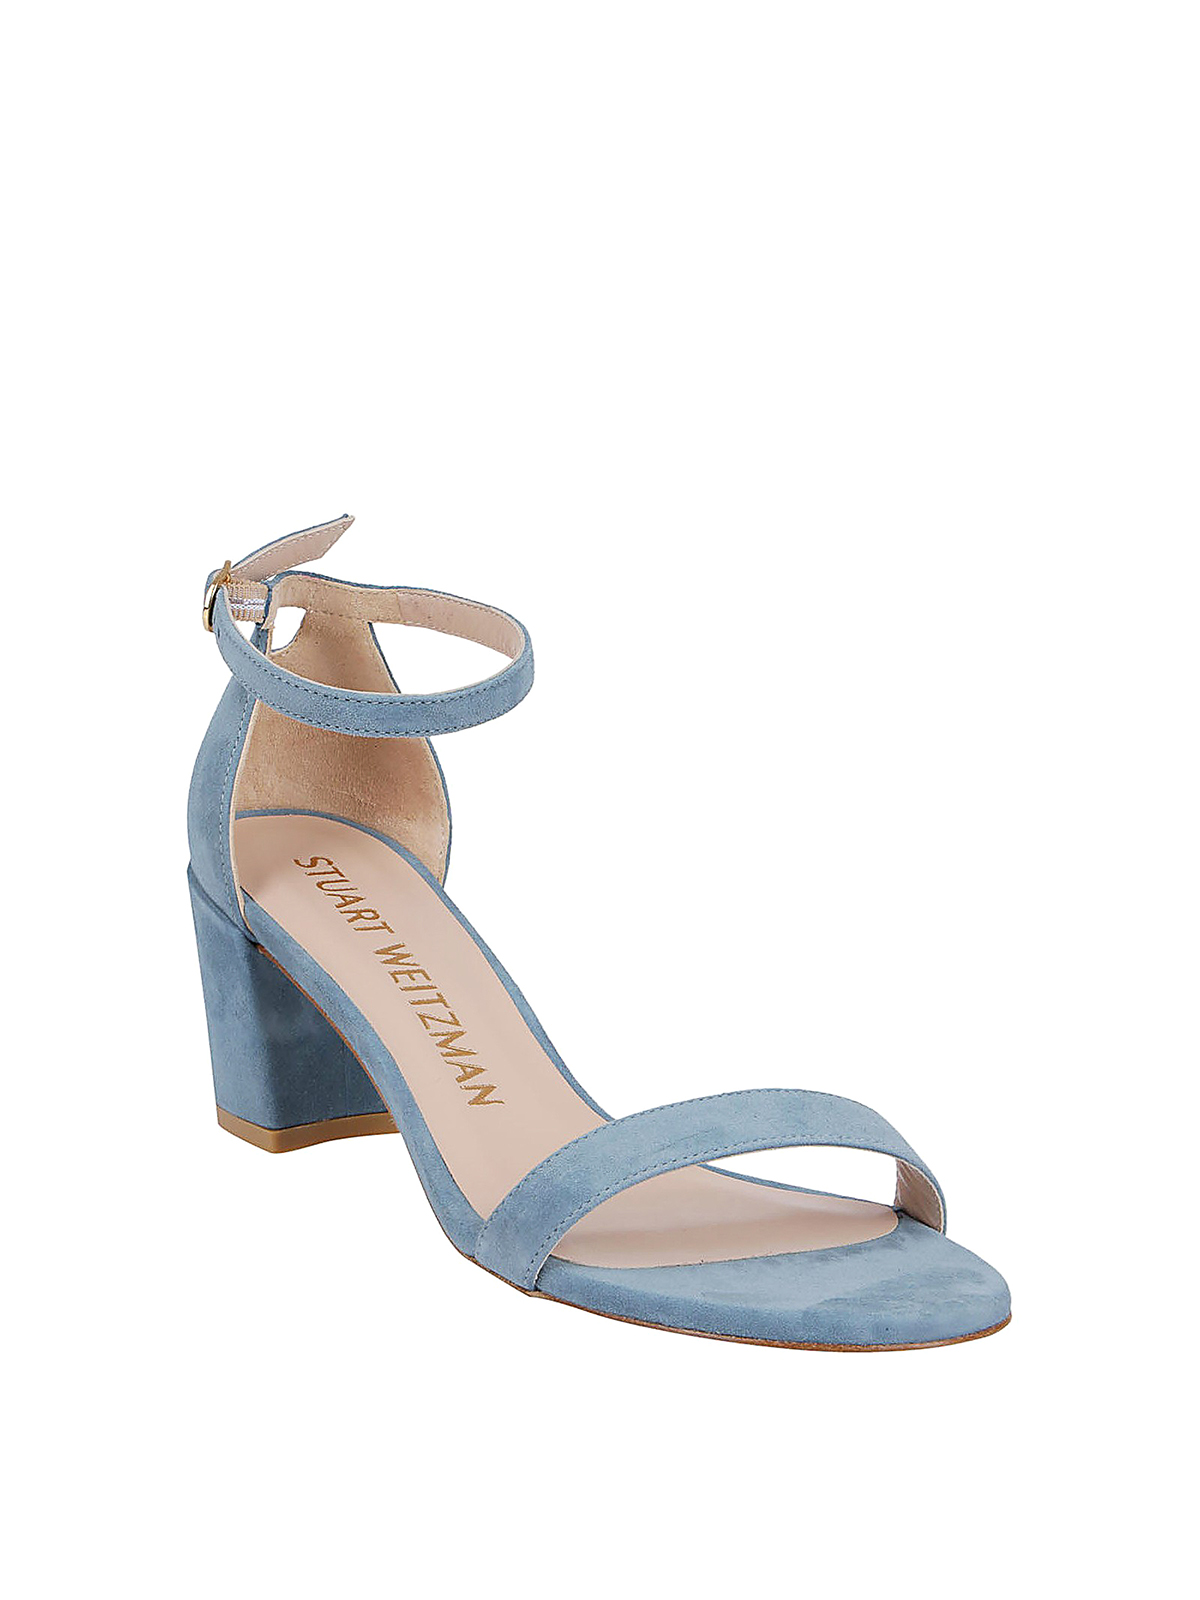 Stuart Weitzman - Simple light blue suede sandals - sandals ...